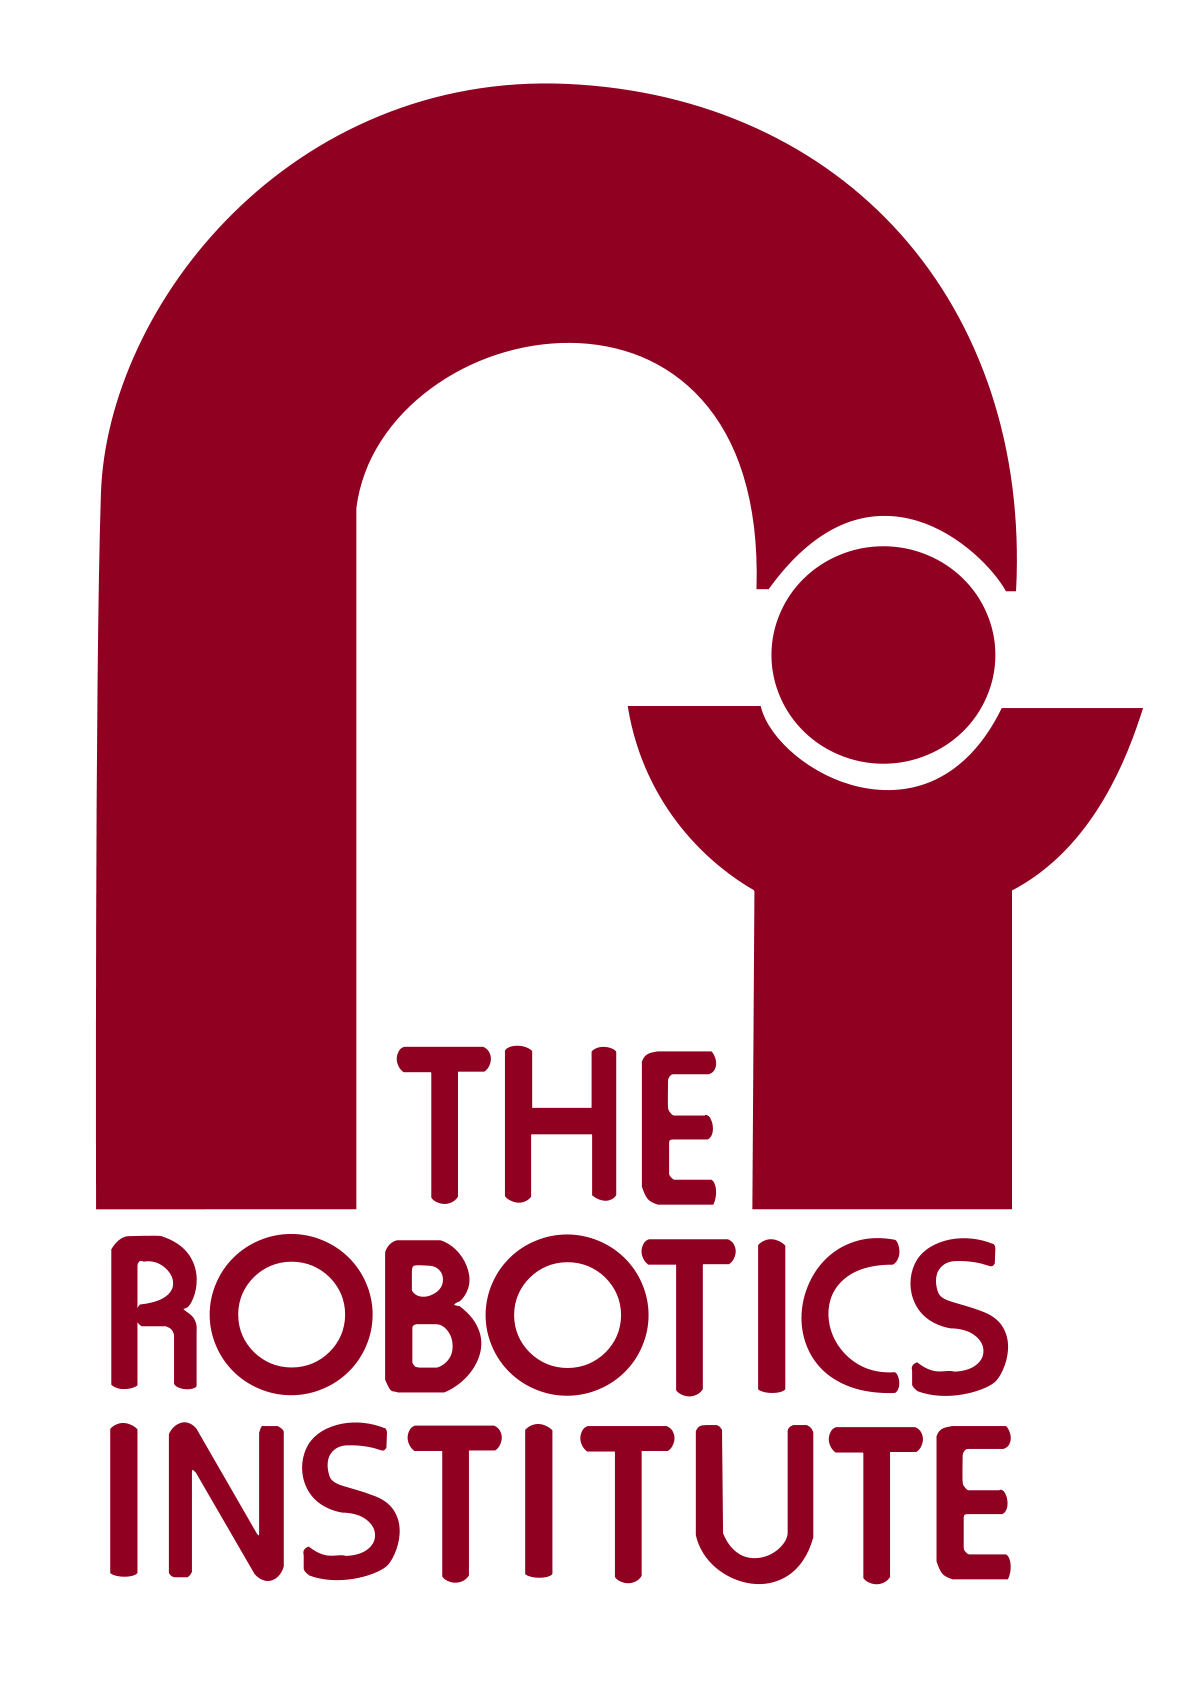 Carnegie Mellon University Logo - Robotics Institute